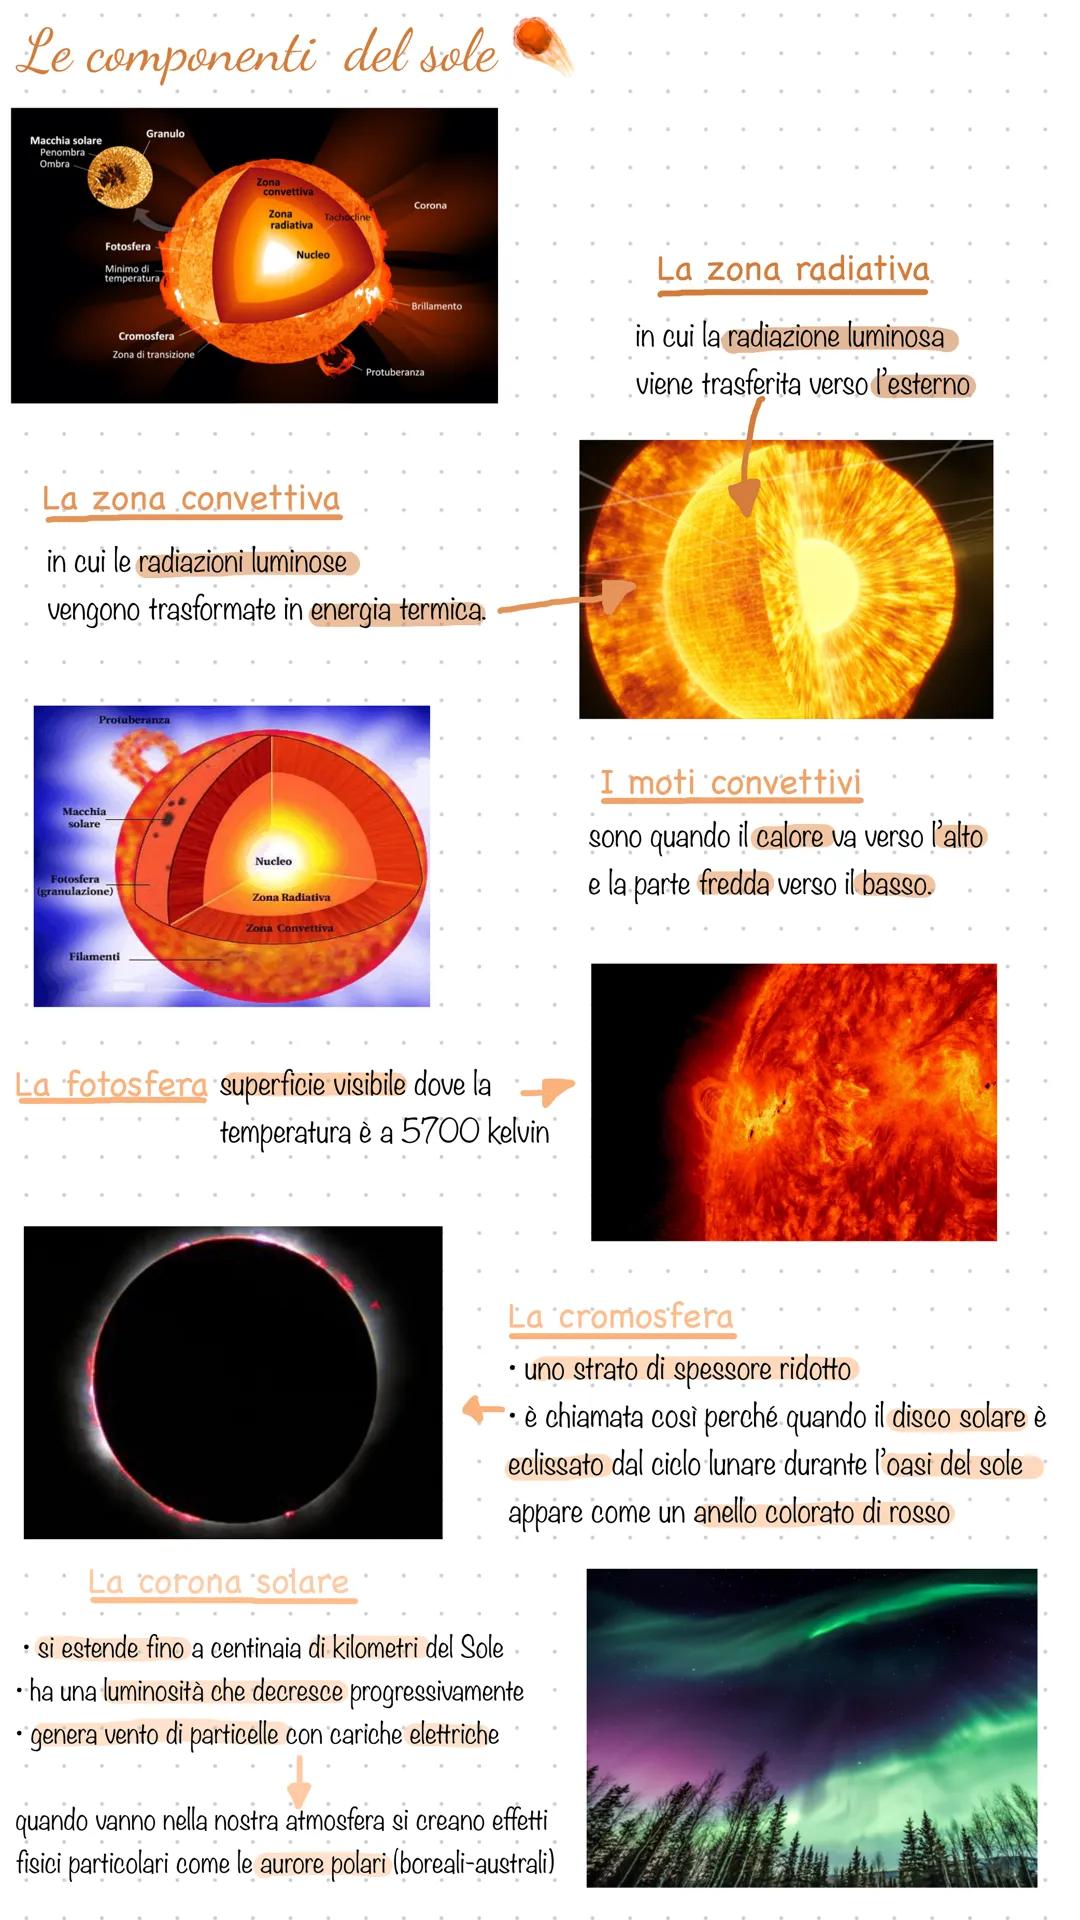 Il sole
Il sole è: una stella è 110 volte più grande della terra.
una componente della nostra galassia.
F
gas che lo compongono sono:
-idrog